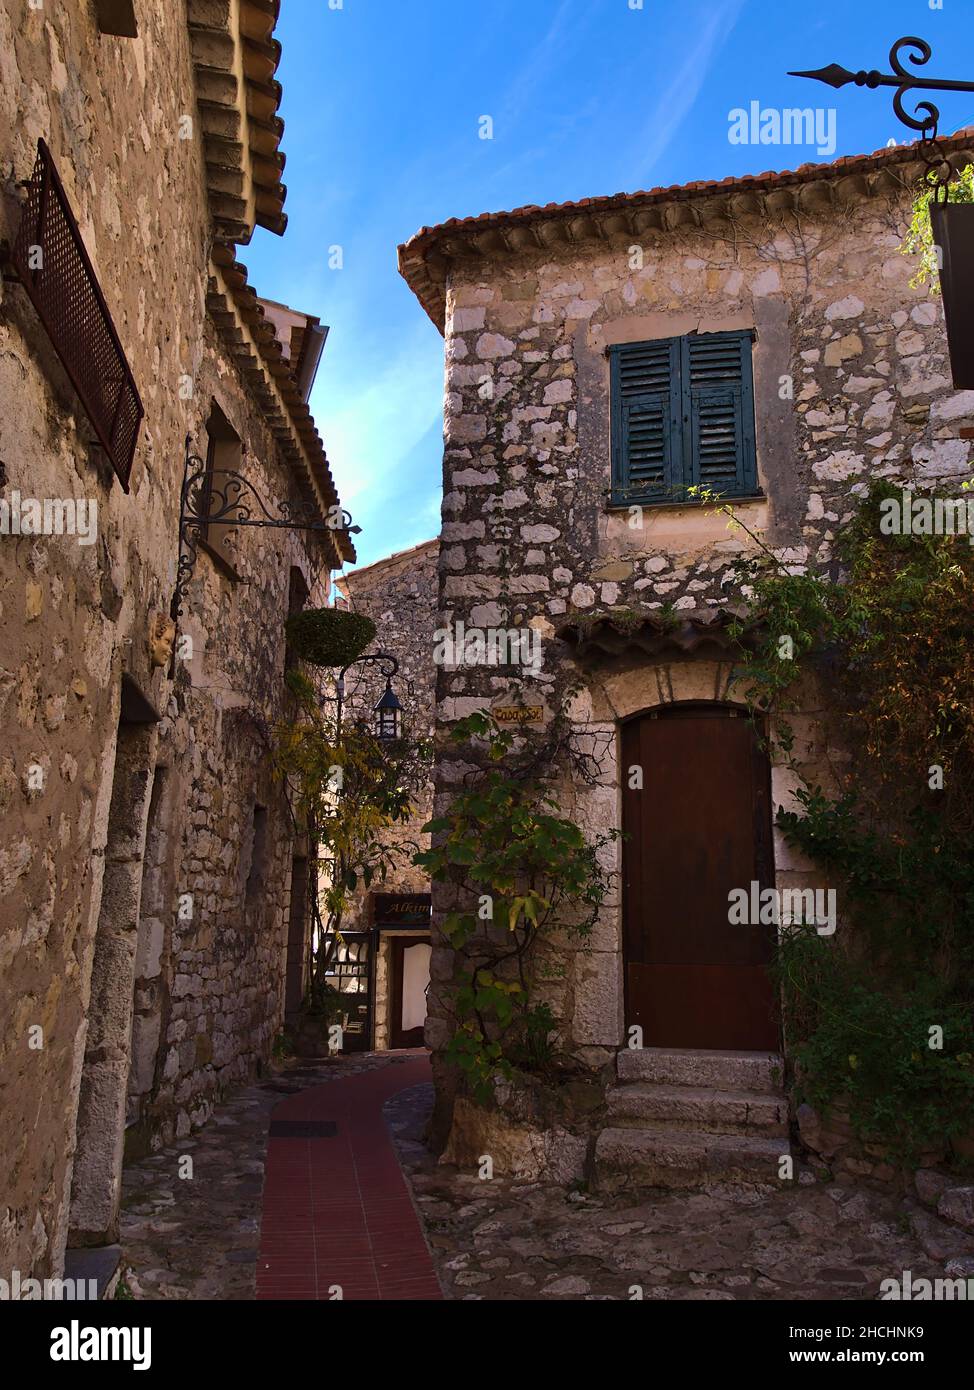 Ruelle étroite dans le centre historique de la petite ville médiévale d'Eze Village sur la Côte d'Azur avec de vieux bâtiments en pierre le jour ensoleillé. Banque D'Images